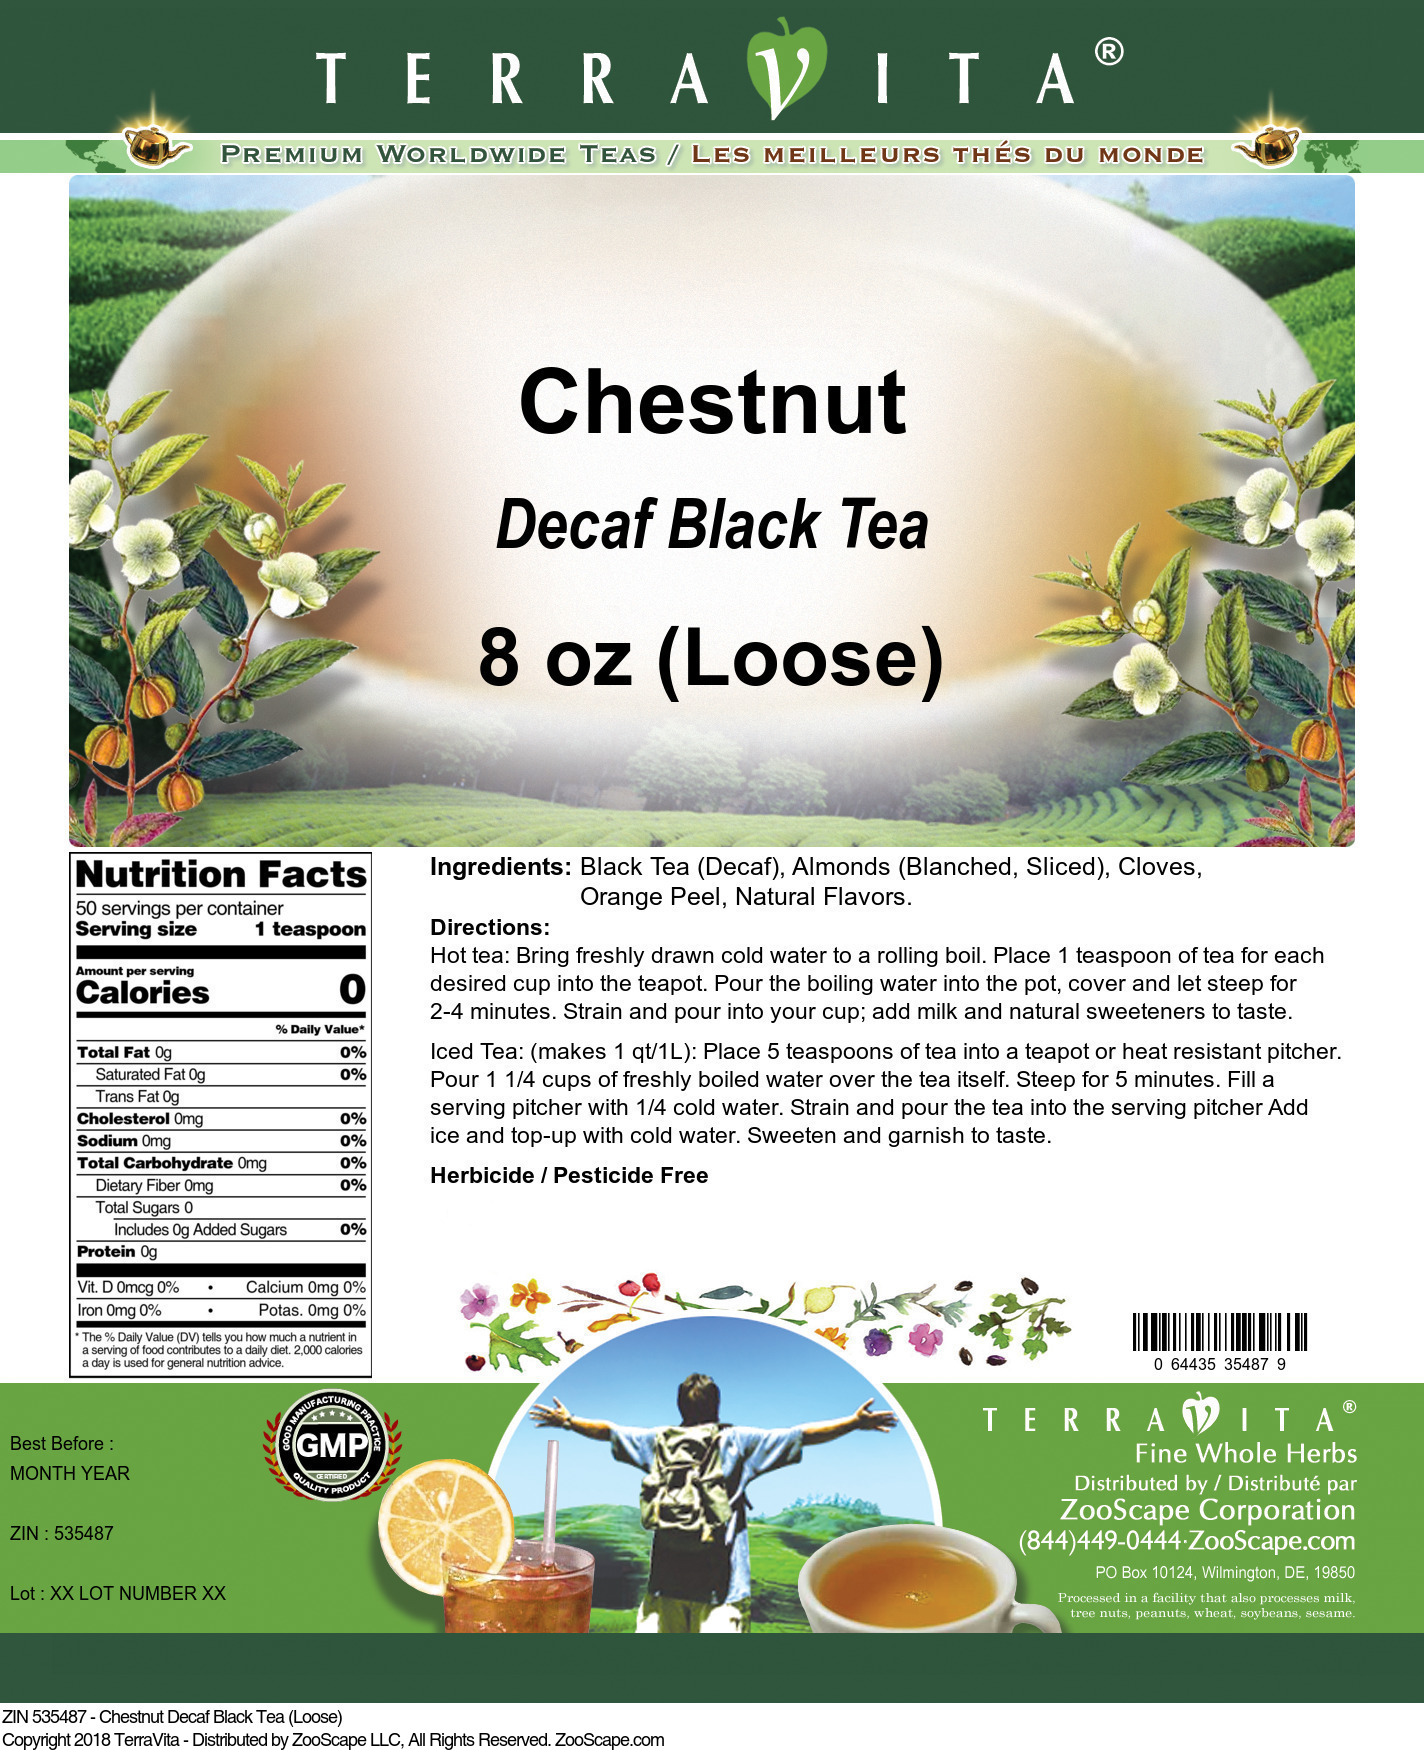 Chestnut Decaf Black Tea (Loose) - Label